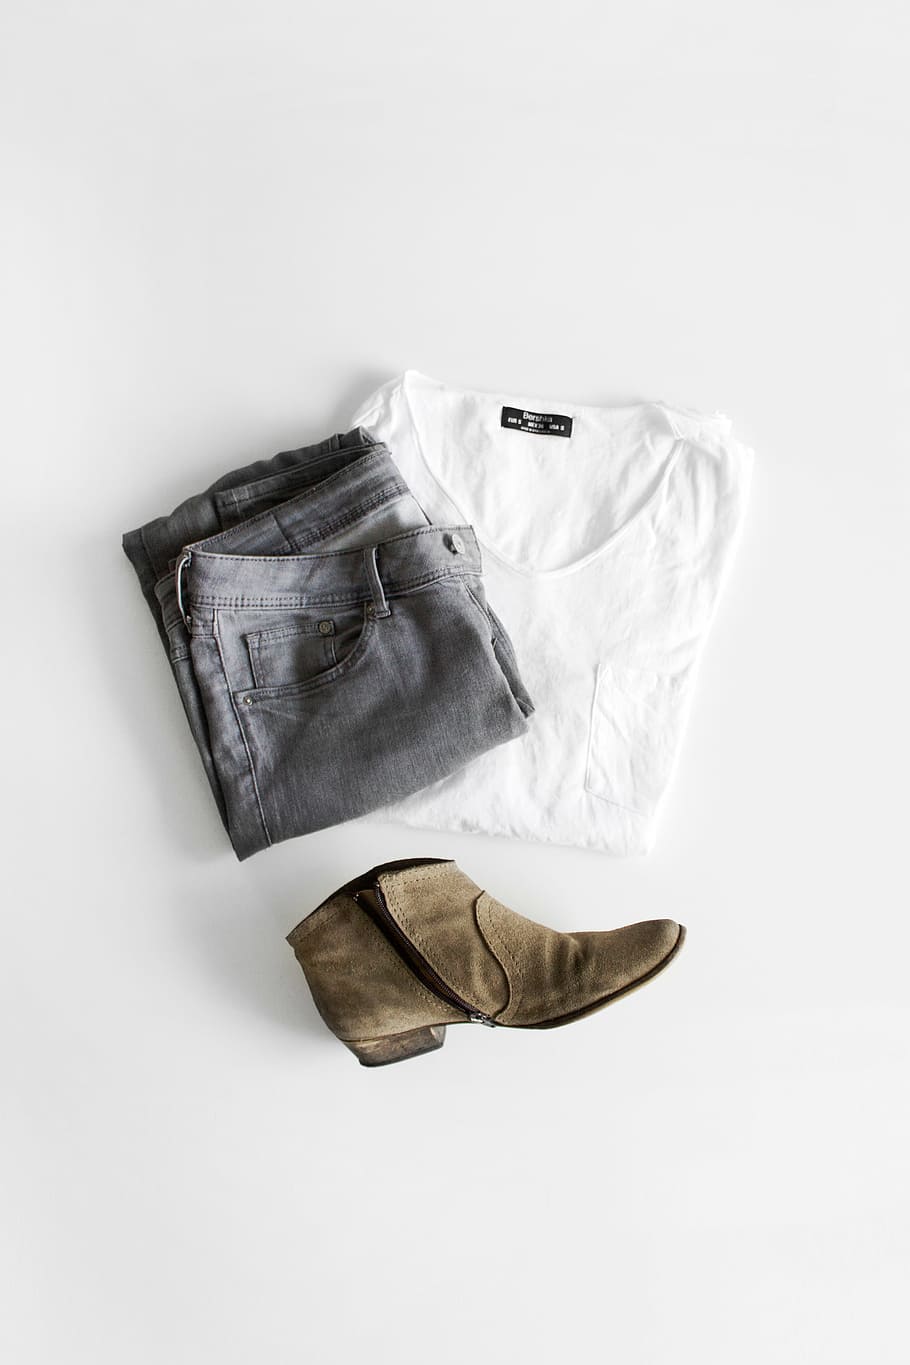 grey, denim bottoms, white, scoop-neck shirt, unpaired, brown, boot, gray, jeans, still